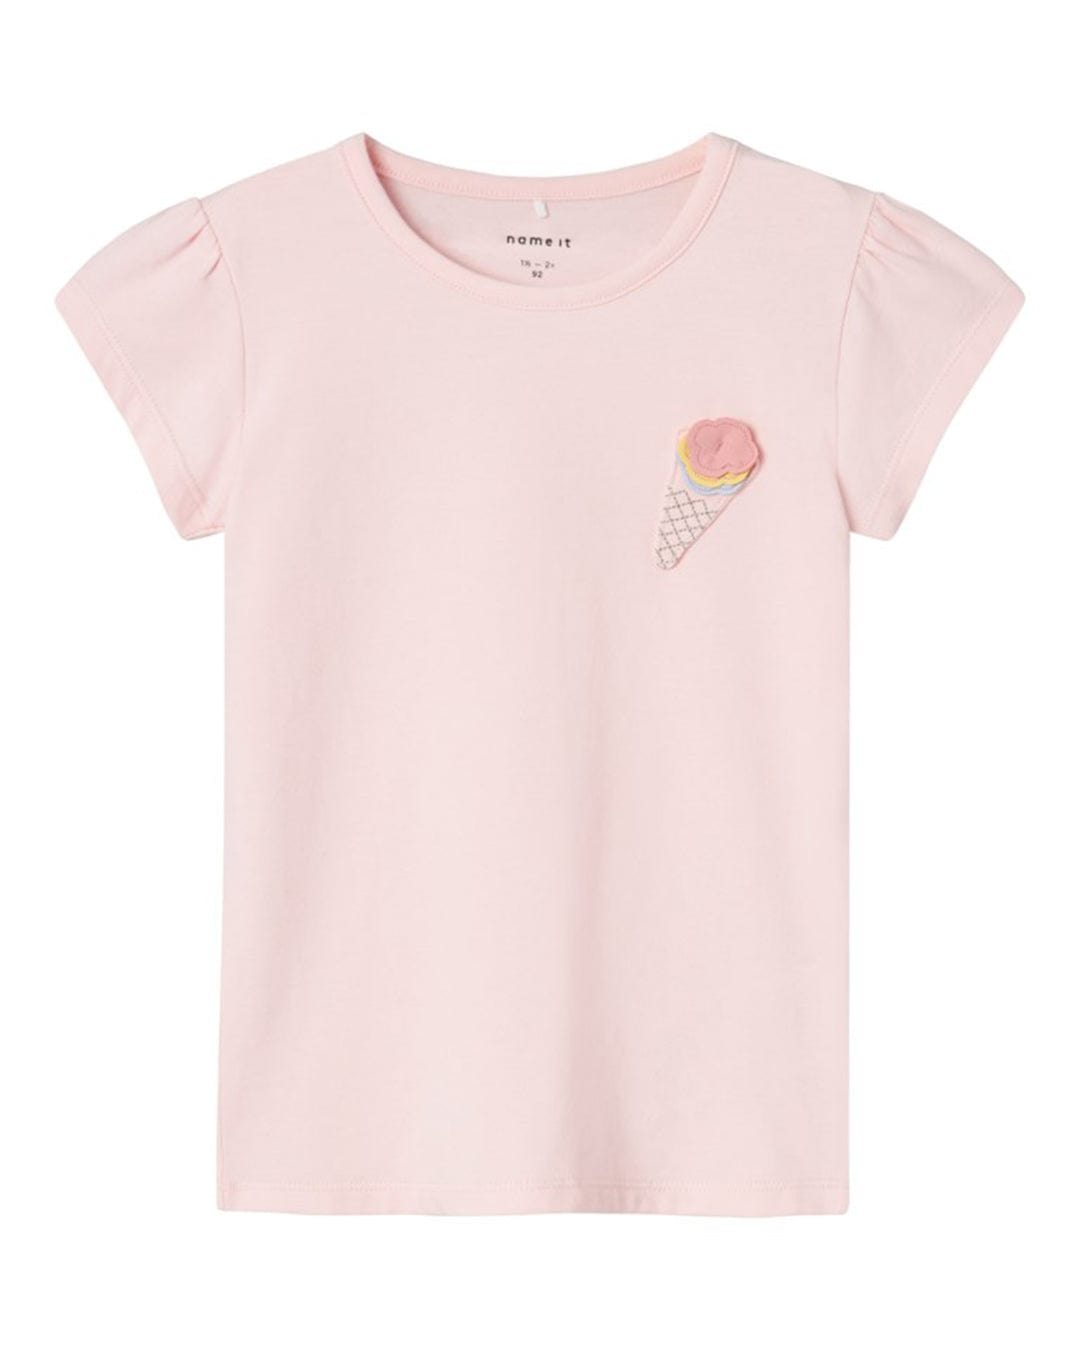 Name It T-Shirts Girls Name It Ice Cream Detail Pink Short Sleeves T-Shirt